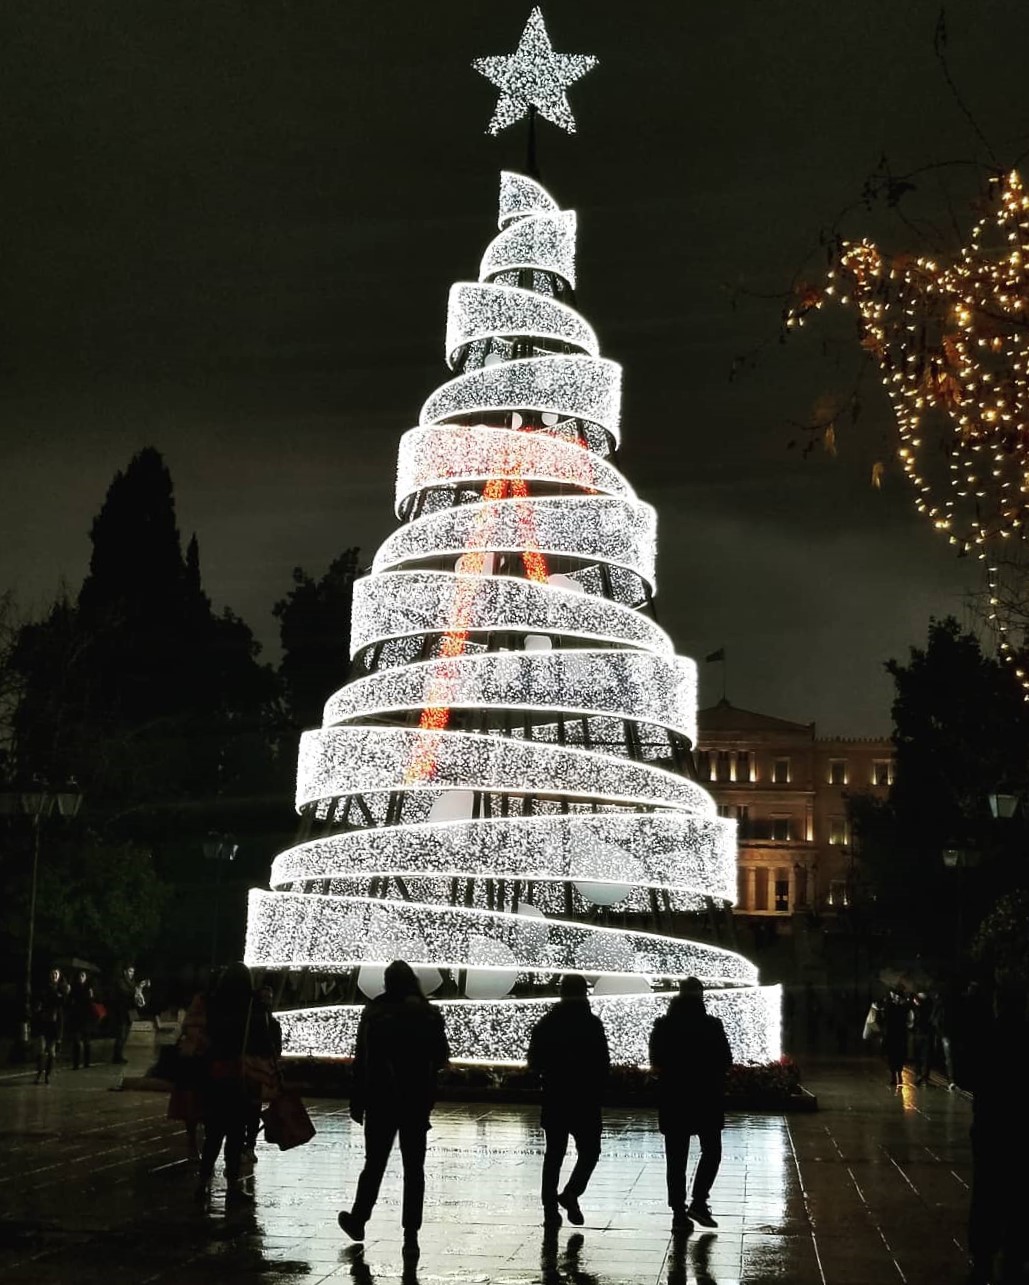 Arbol de Navidad situado en la Plaza más famosa de Atenas, Grecia (llamada Sintagma). Forma parte de la decoración navideña, con el parlamento griego de fondo. 